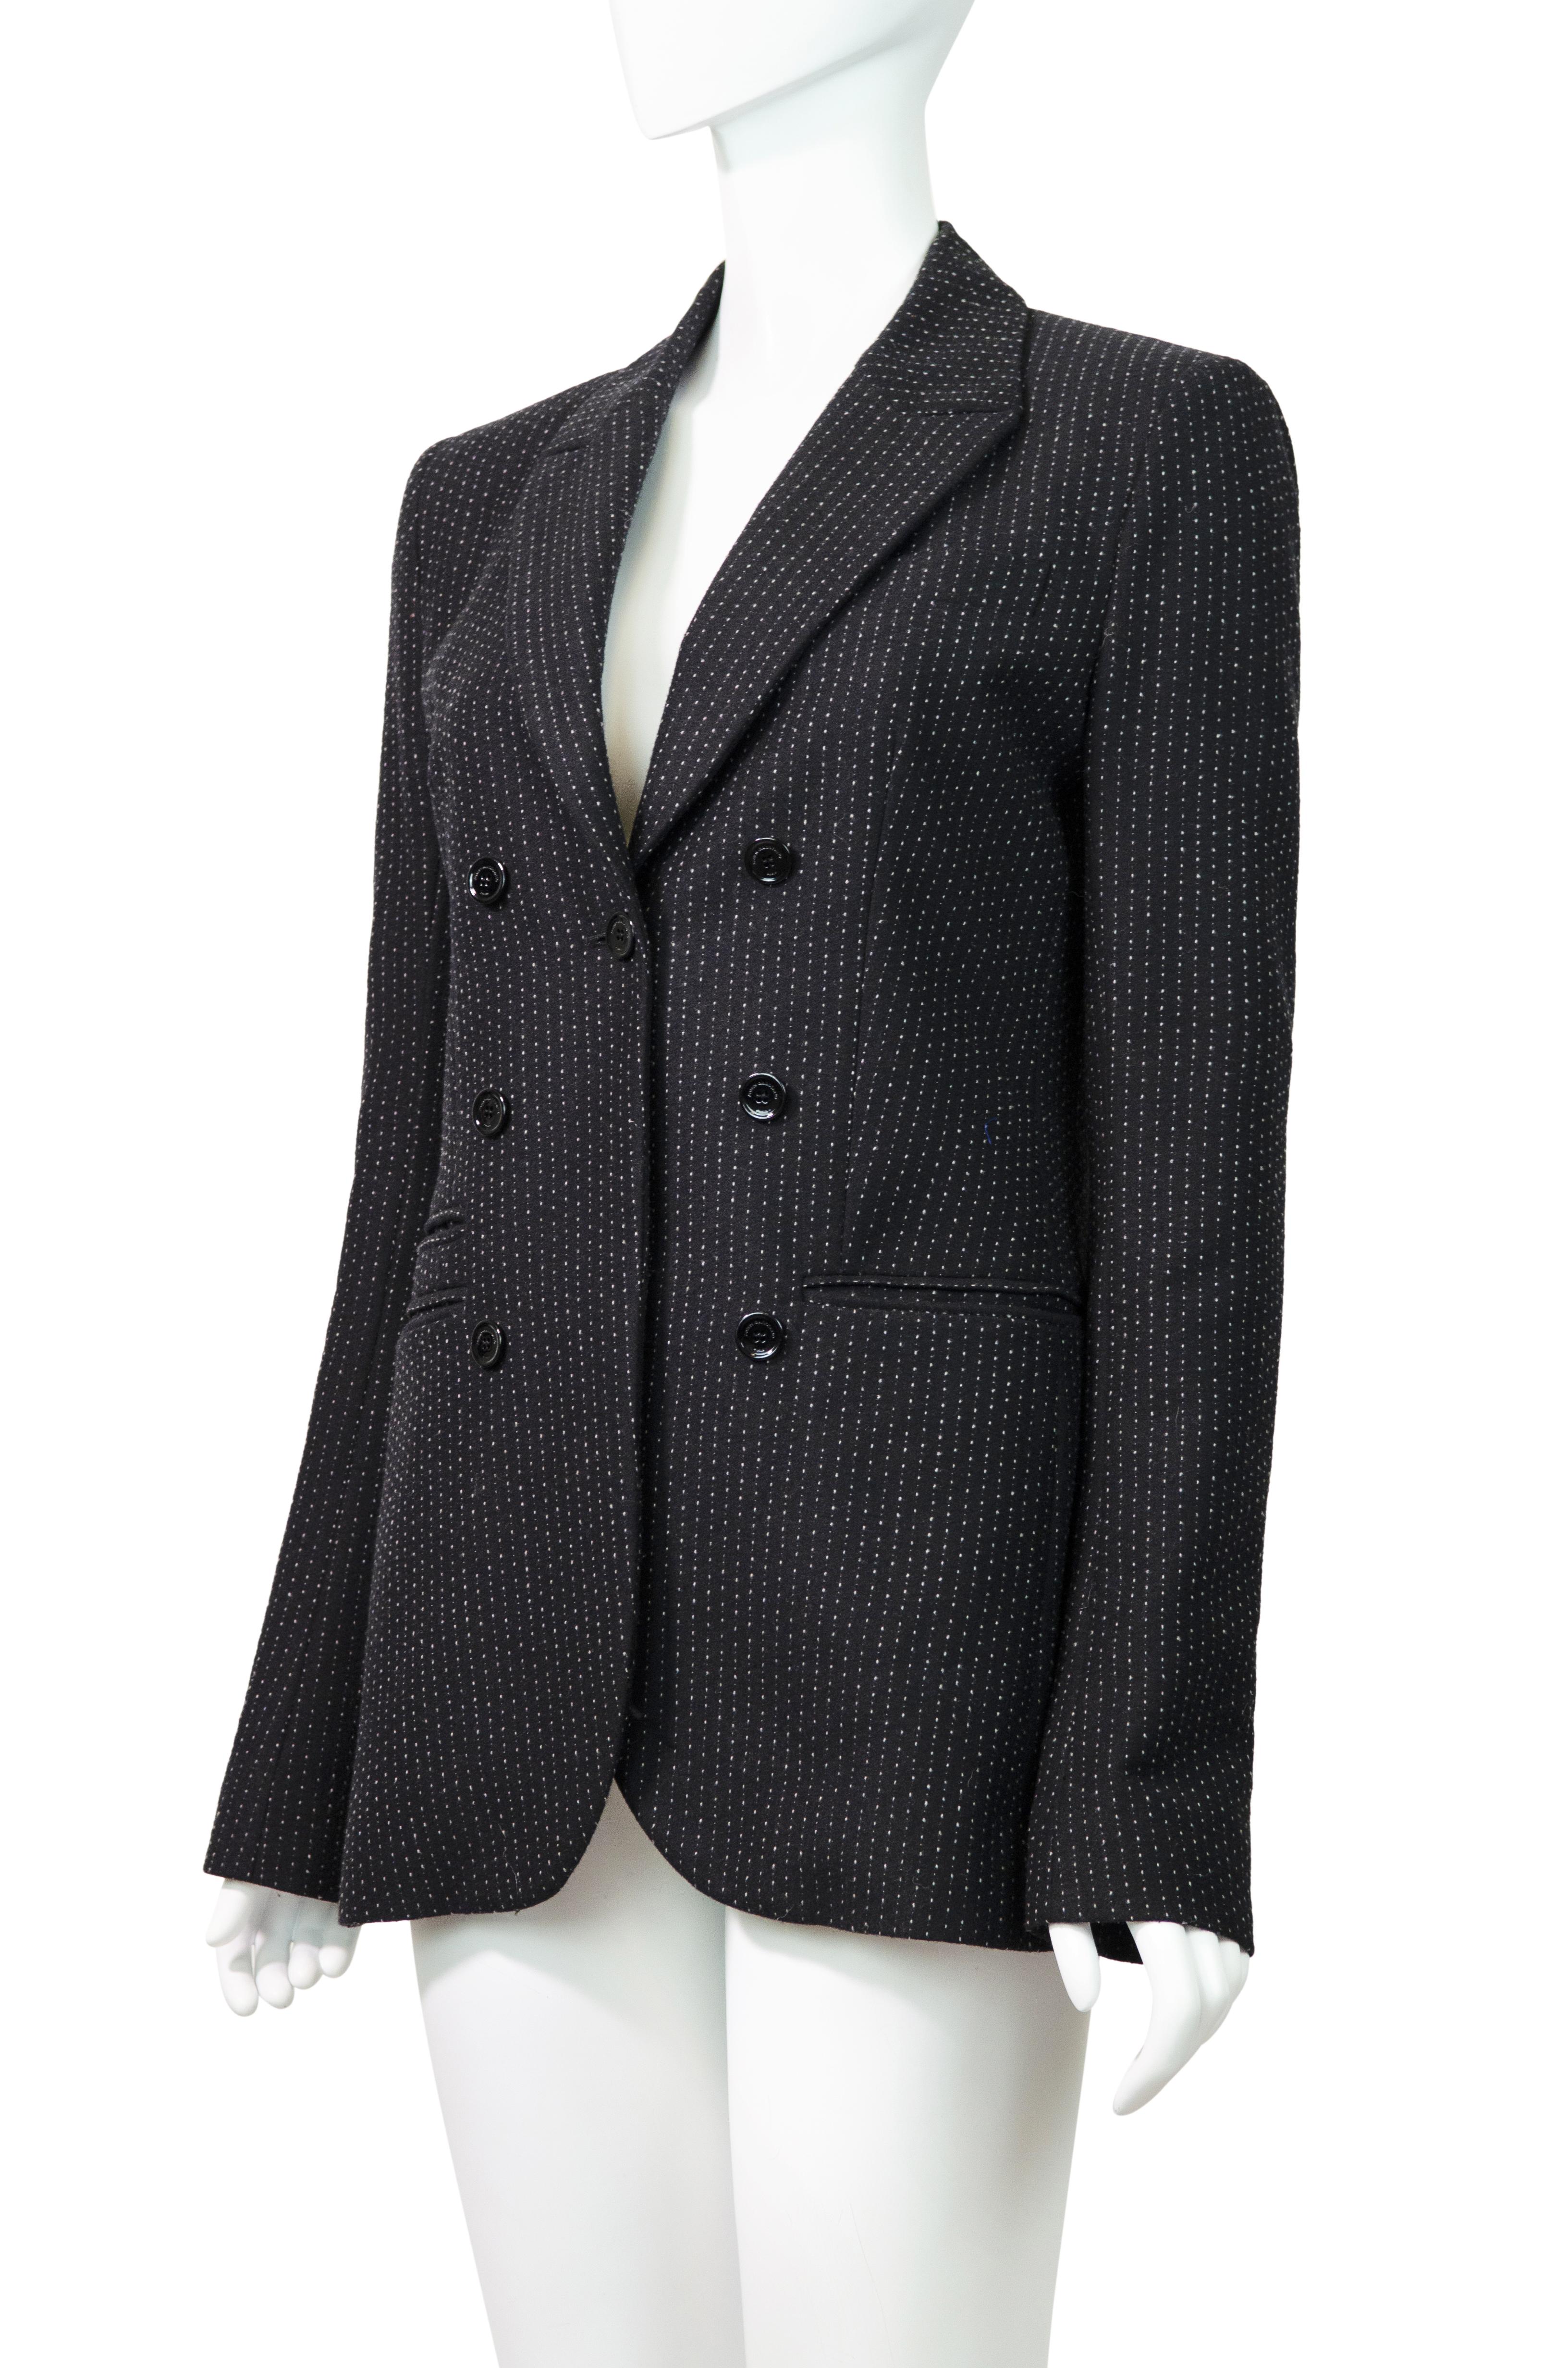 Eleganter und vielseitiger Polkadot-Blazer von John Galliano aus seiner Herbst-Winter-Kollektion 2017.

Dieses vielseitige Kleidungsstück aus weicher Wolle mit schickem Mikrotupfenmuster hat einen V-Ausschnitt, einen einreihigen Verschluss, sechs